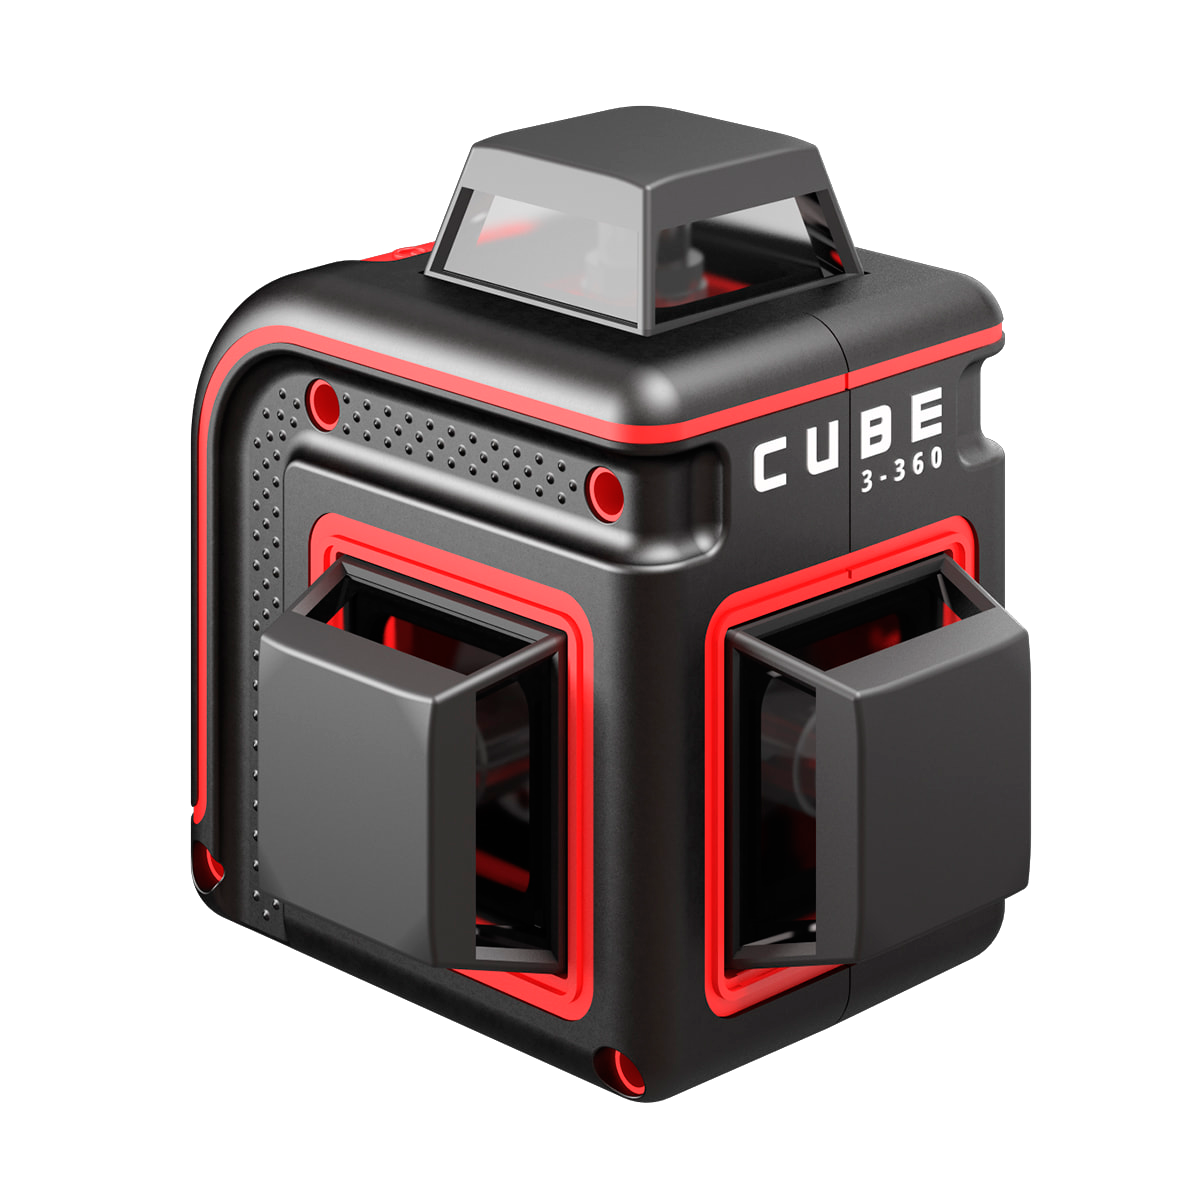 Лазерный уровень ada cube basic edition. Лазерный уровень ada Cube 3-360 Home Edition а00565. Нивелир лазерный ada Cube 360 professional Edition. Лазерный уровень ada Cube 360 Basic Edition. Лазерный уровень ada Cube 3-360 Green Basic Edition.